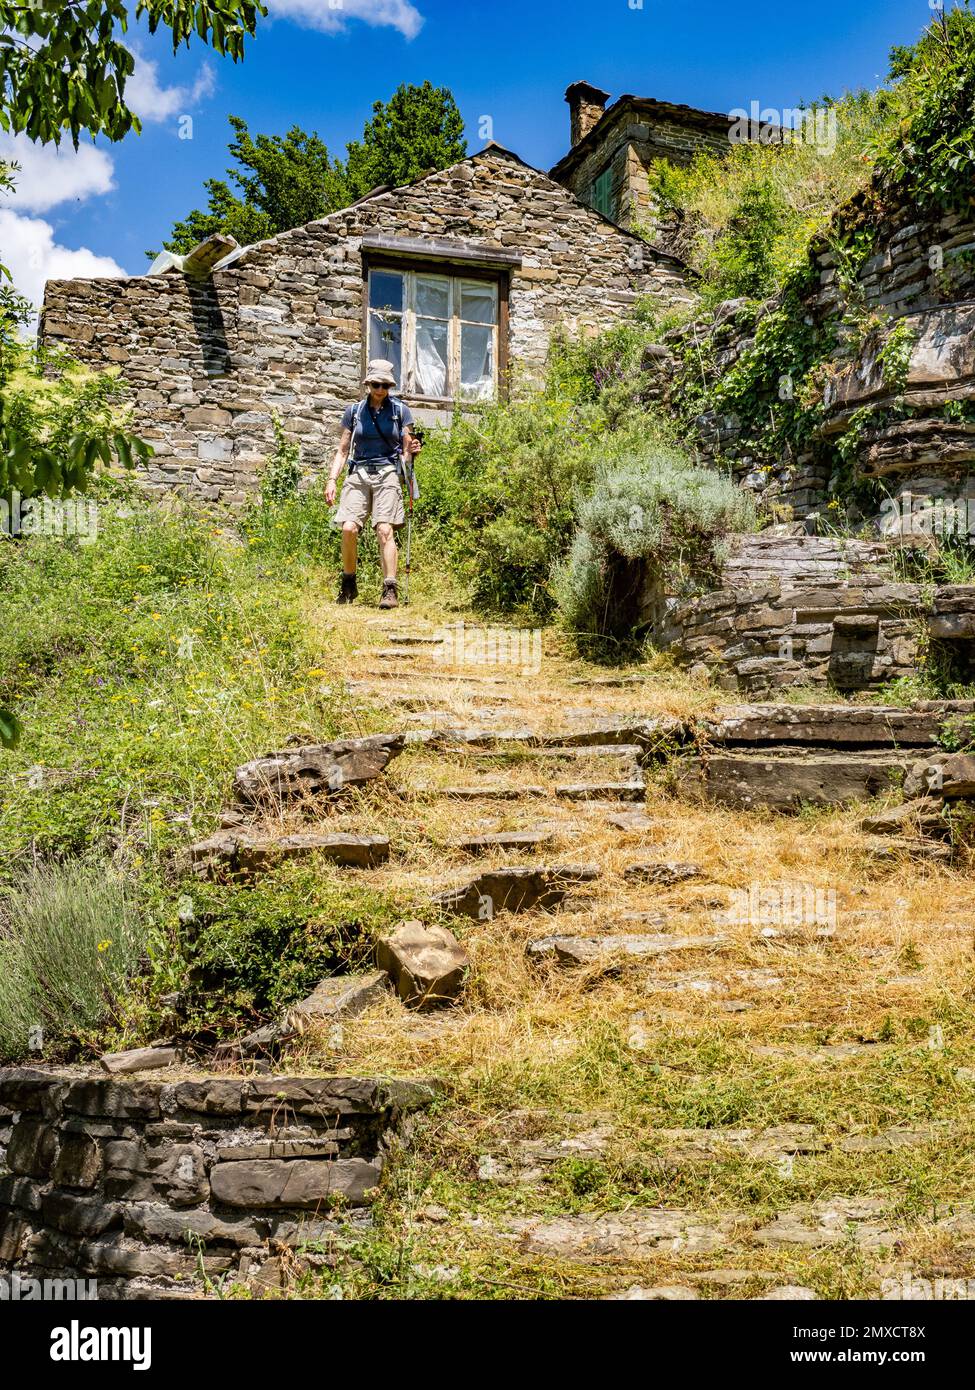 Camminatore scendendo ripide tracce attraverso il villaggio di montagna di Kipi nella regione Zagori di Epiro Grecia settentrionale Foto Stock